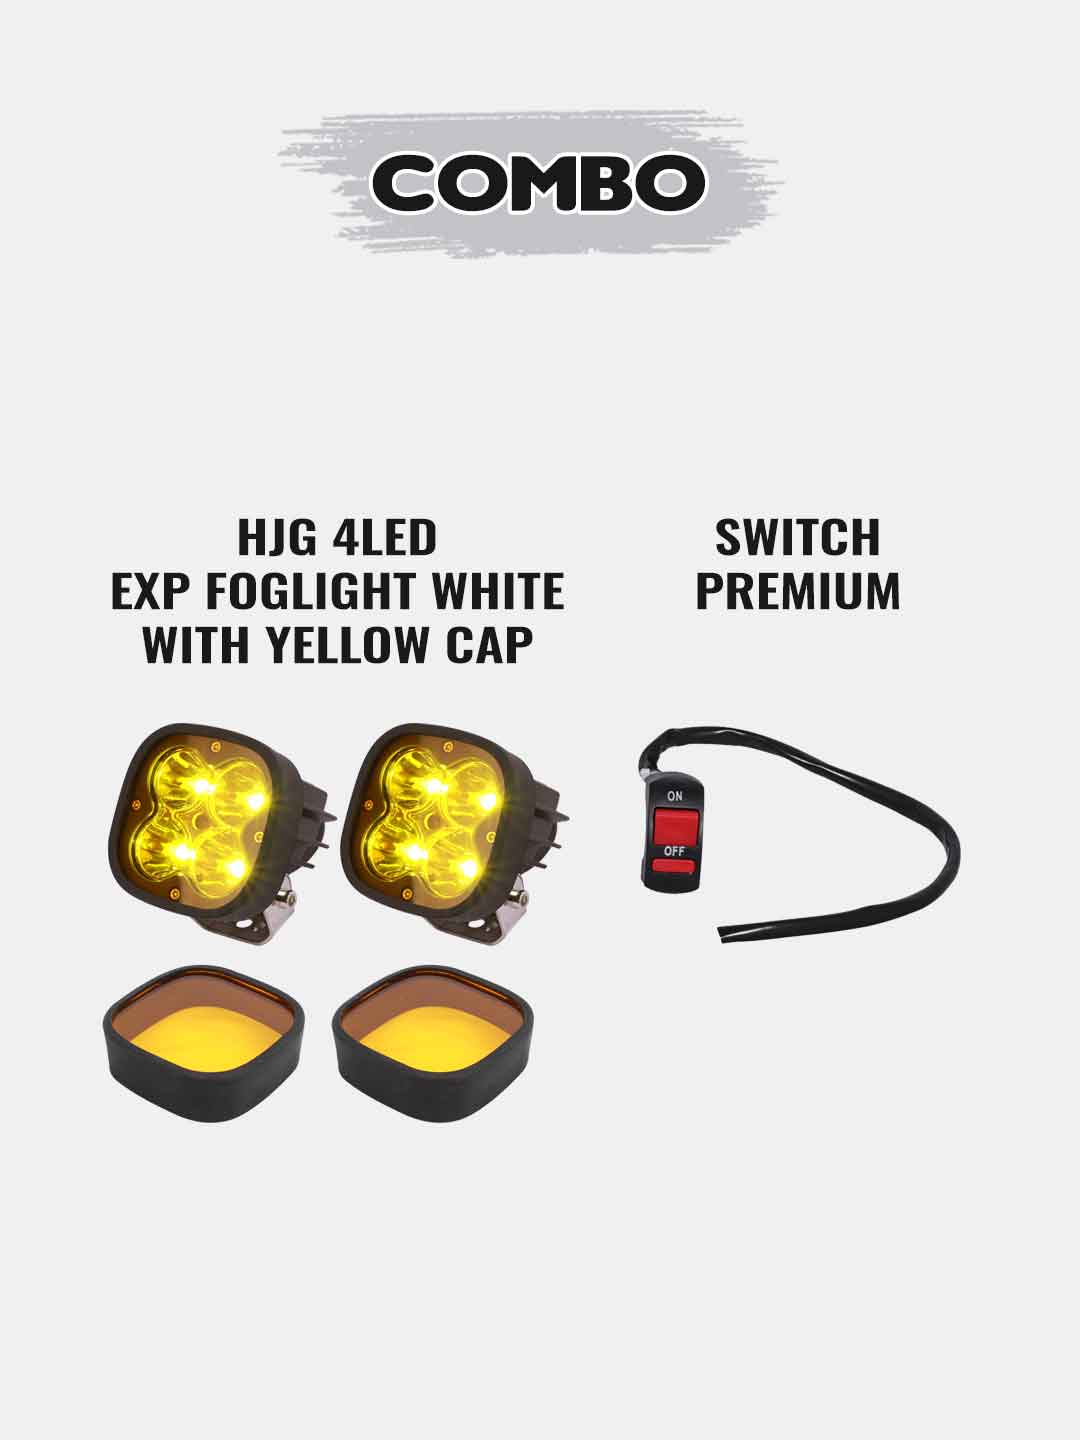 1 Pair HJG 4 LED Premium Fog Light-White With Yellow Cap+Premium Switch